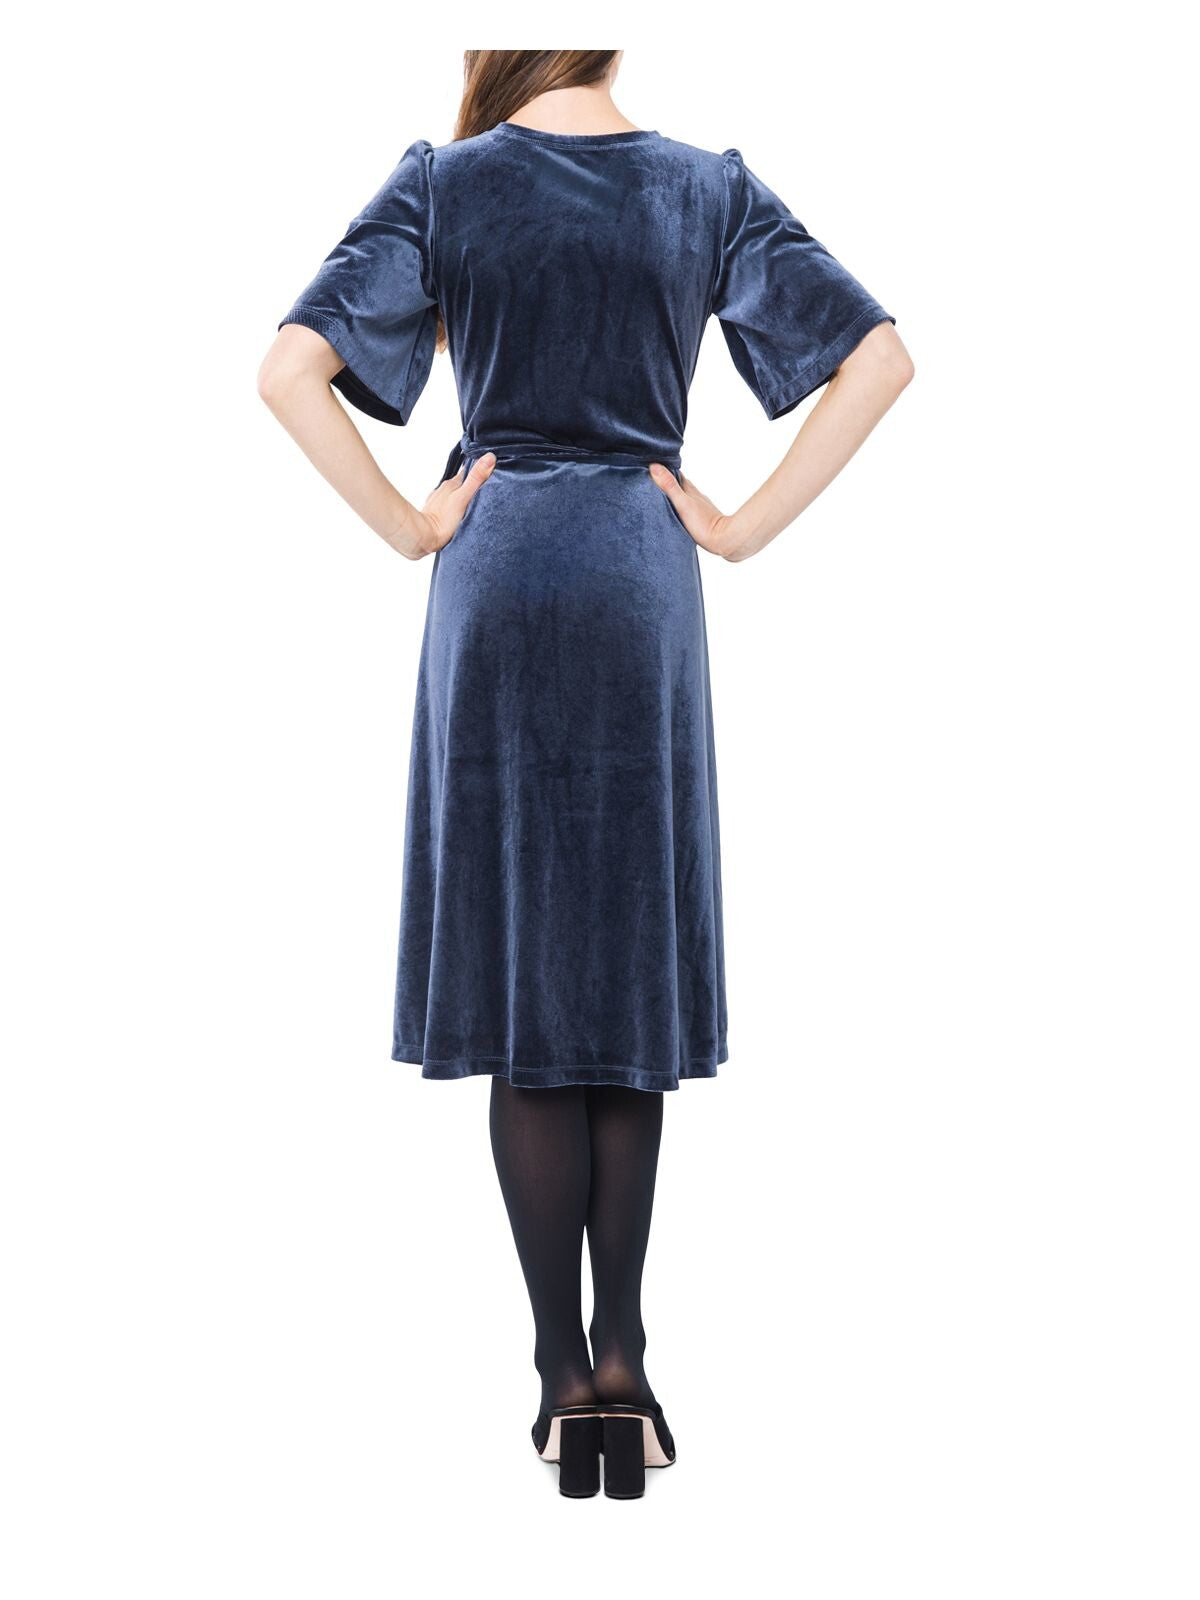 NOM Womens Blue Velvet Short Sleeve Knee Length Wrap Dress Size: L